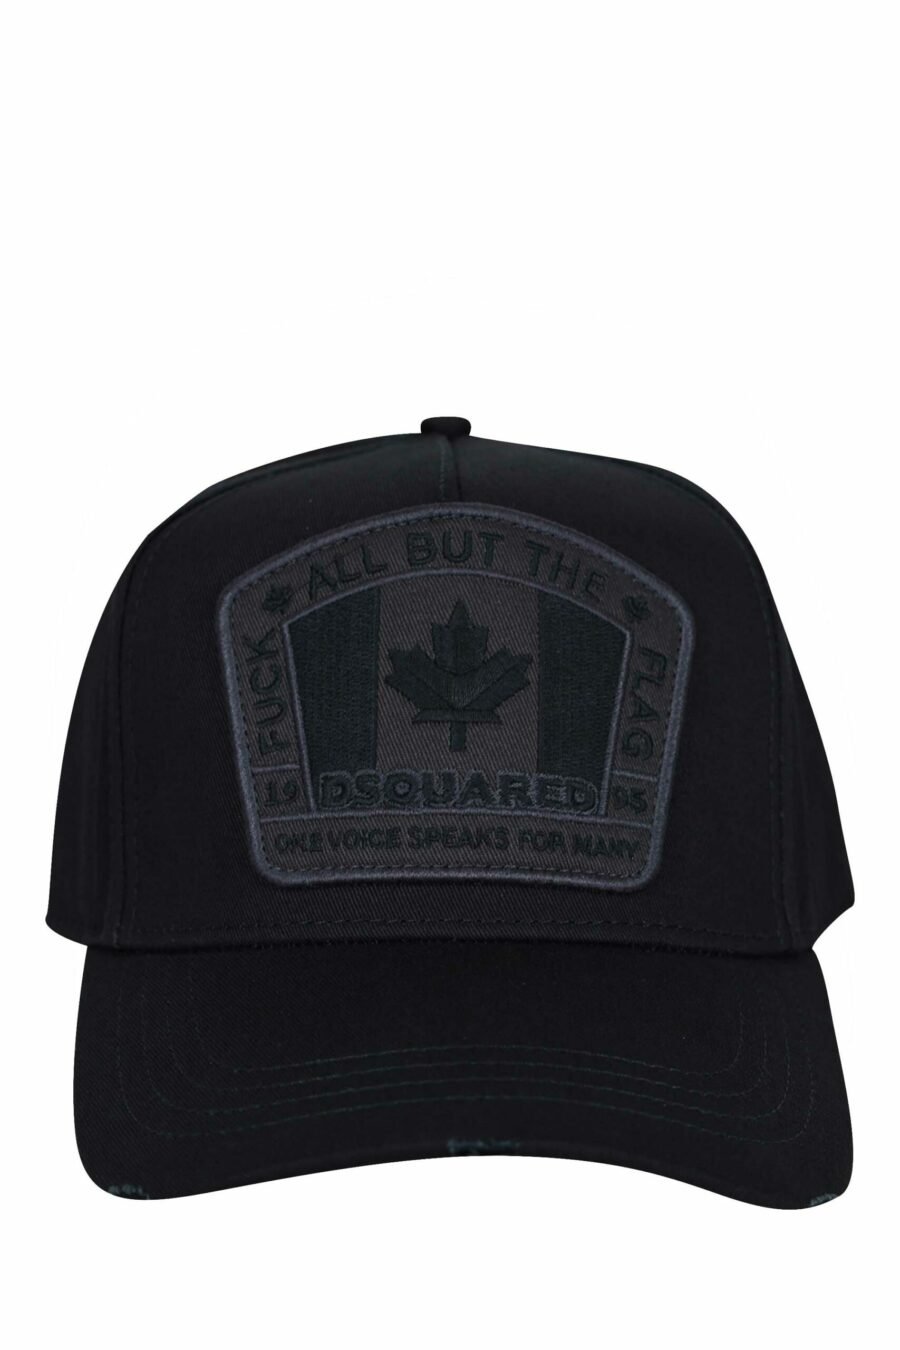 Schwarze Kappe mit einfarbigem Kanada-Logoaufnäher - 8055777160626 skaliert